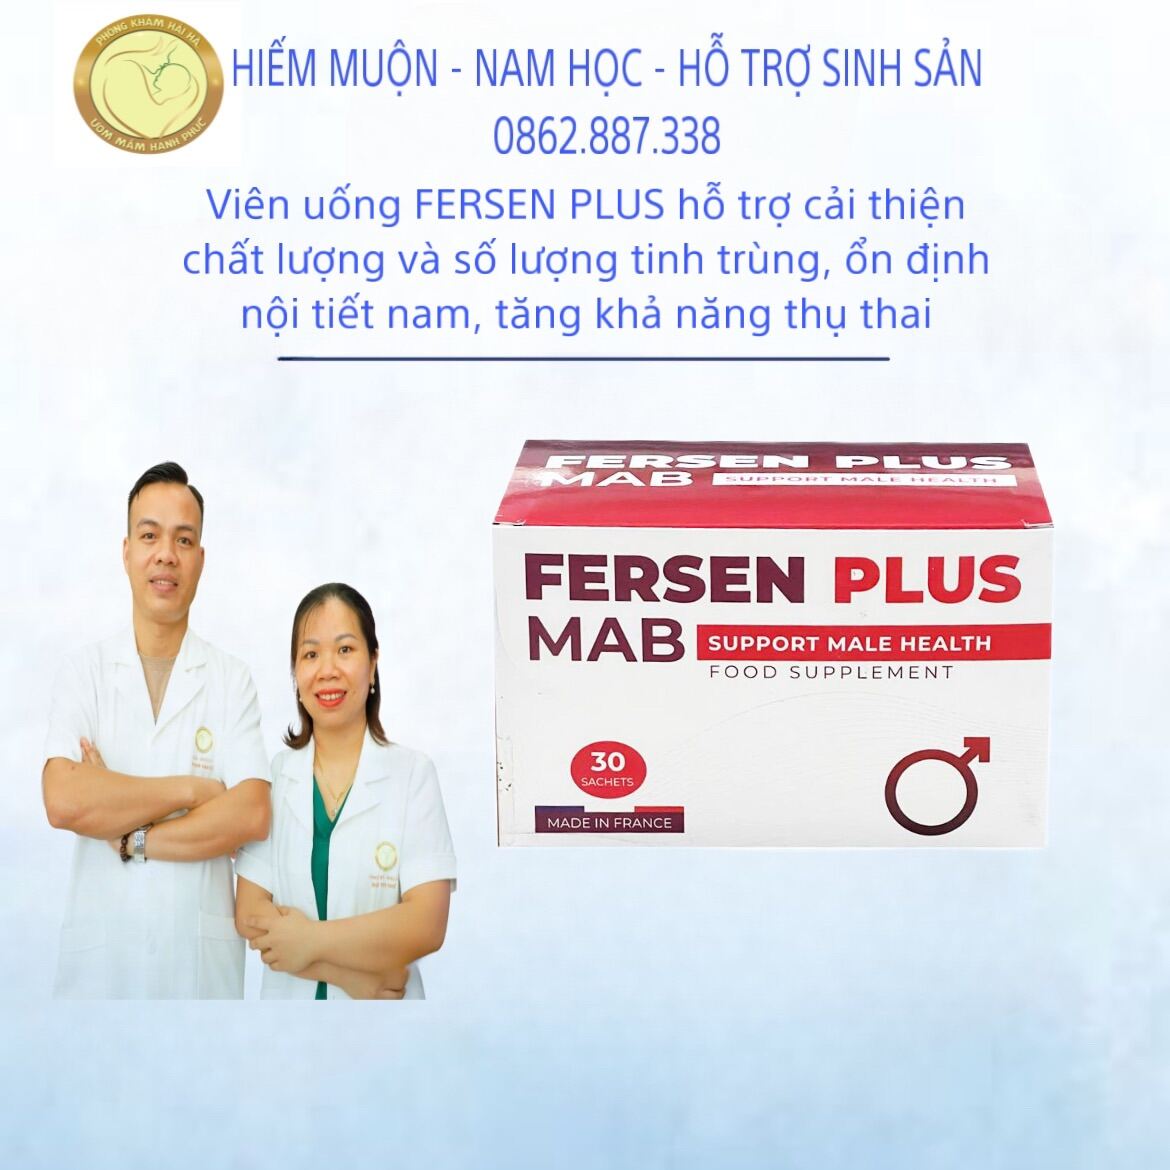 Viên uống FERSEN PLUS hỗ trợ cải thiện chất lượng và số lượng tinh trùng